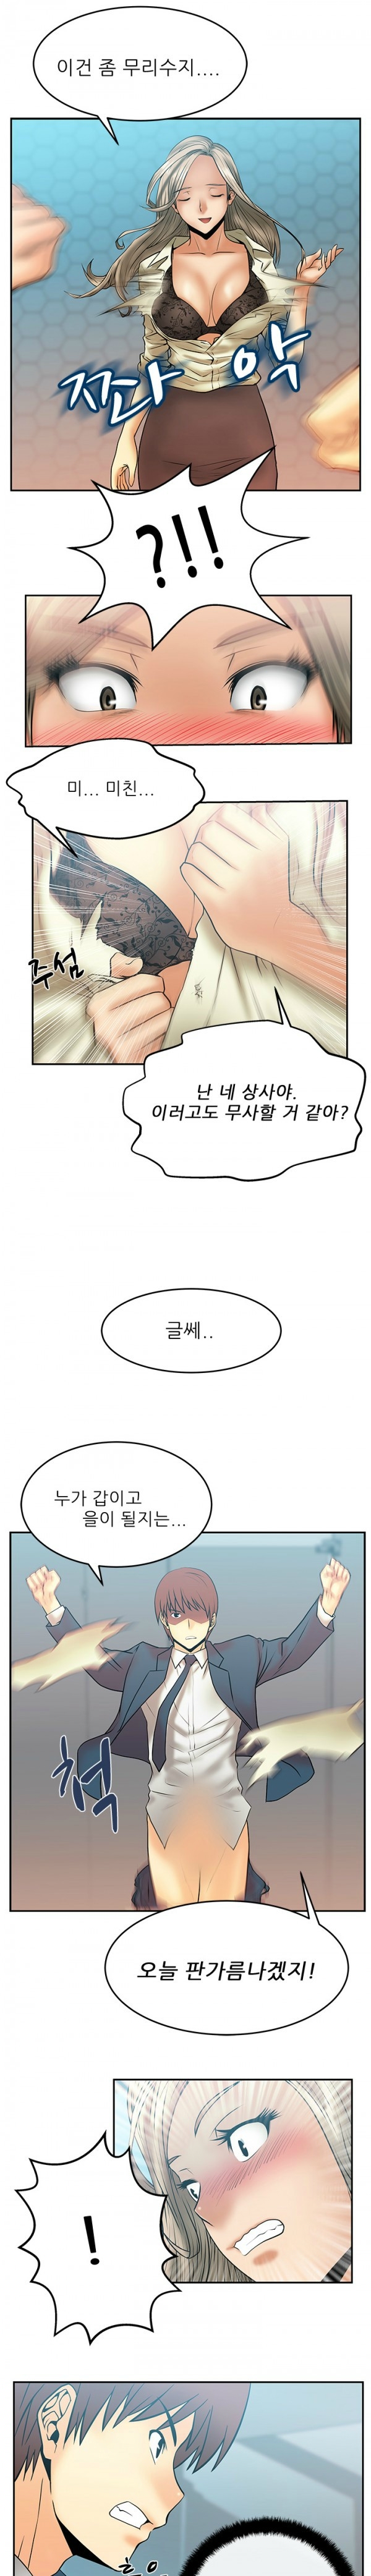 [Minu Mindu] Office Lady Vol. 1 [Korean] 101